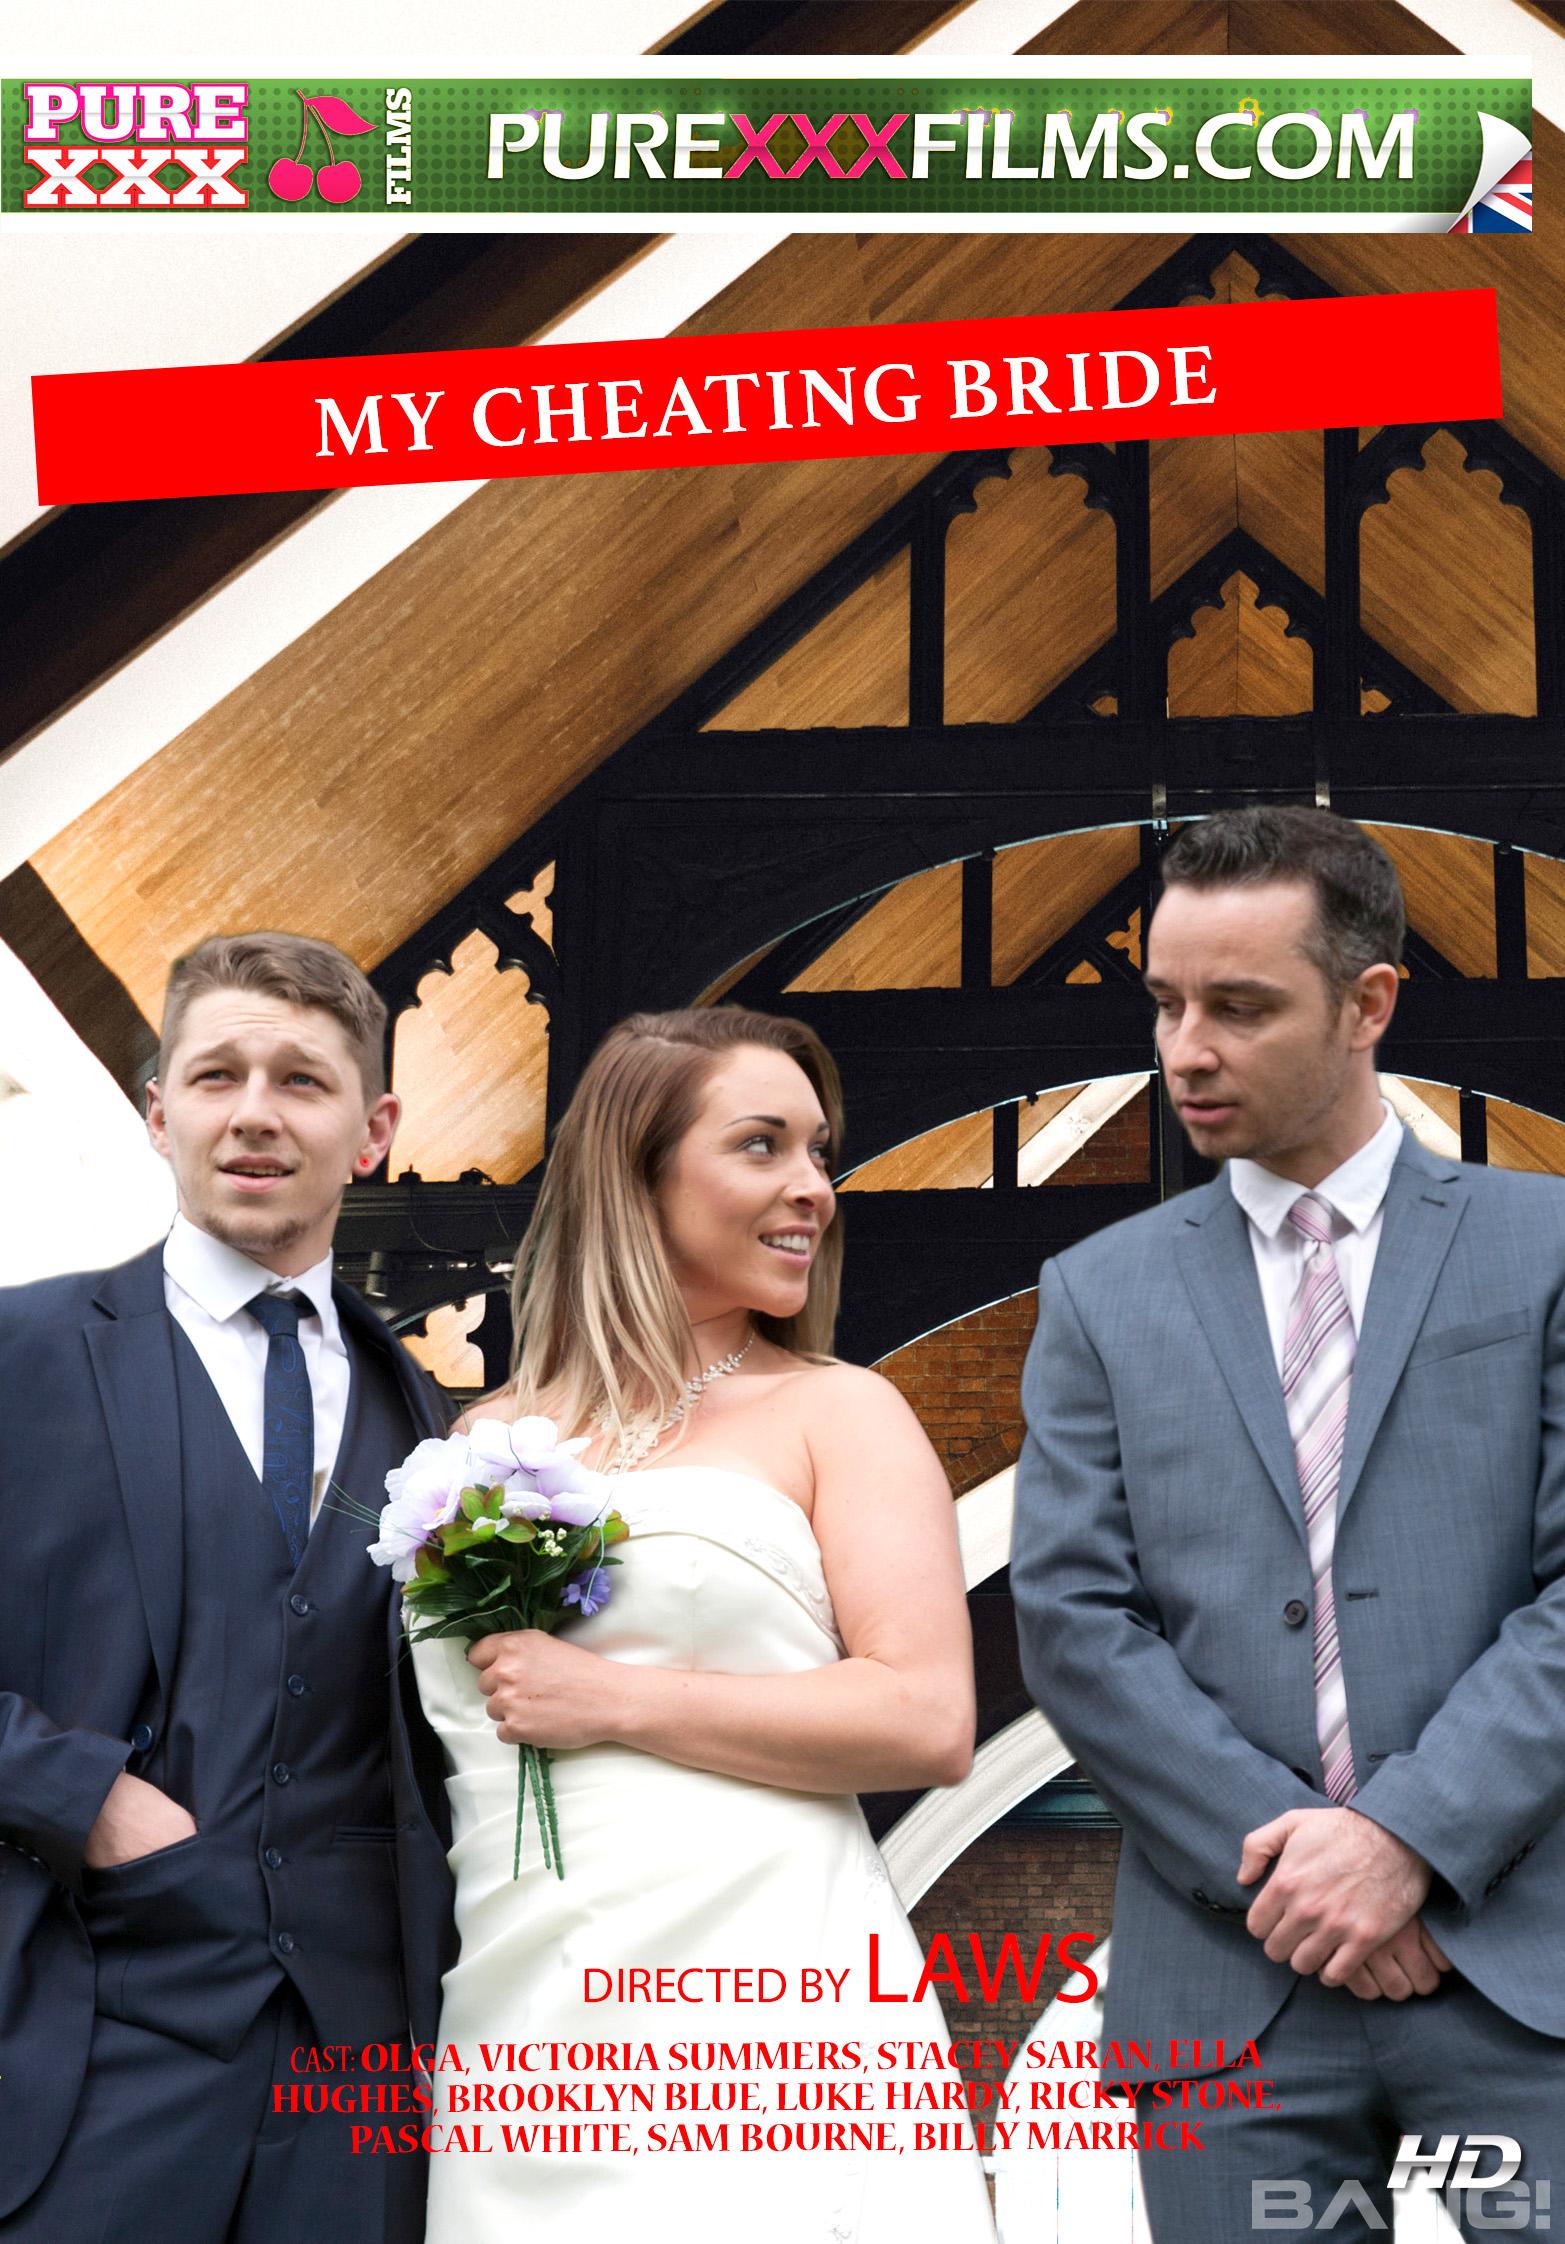 My Cheating Bride | bang.com